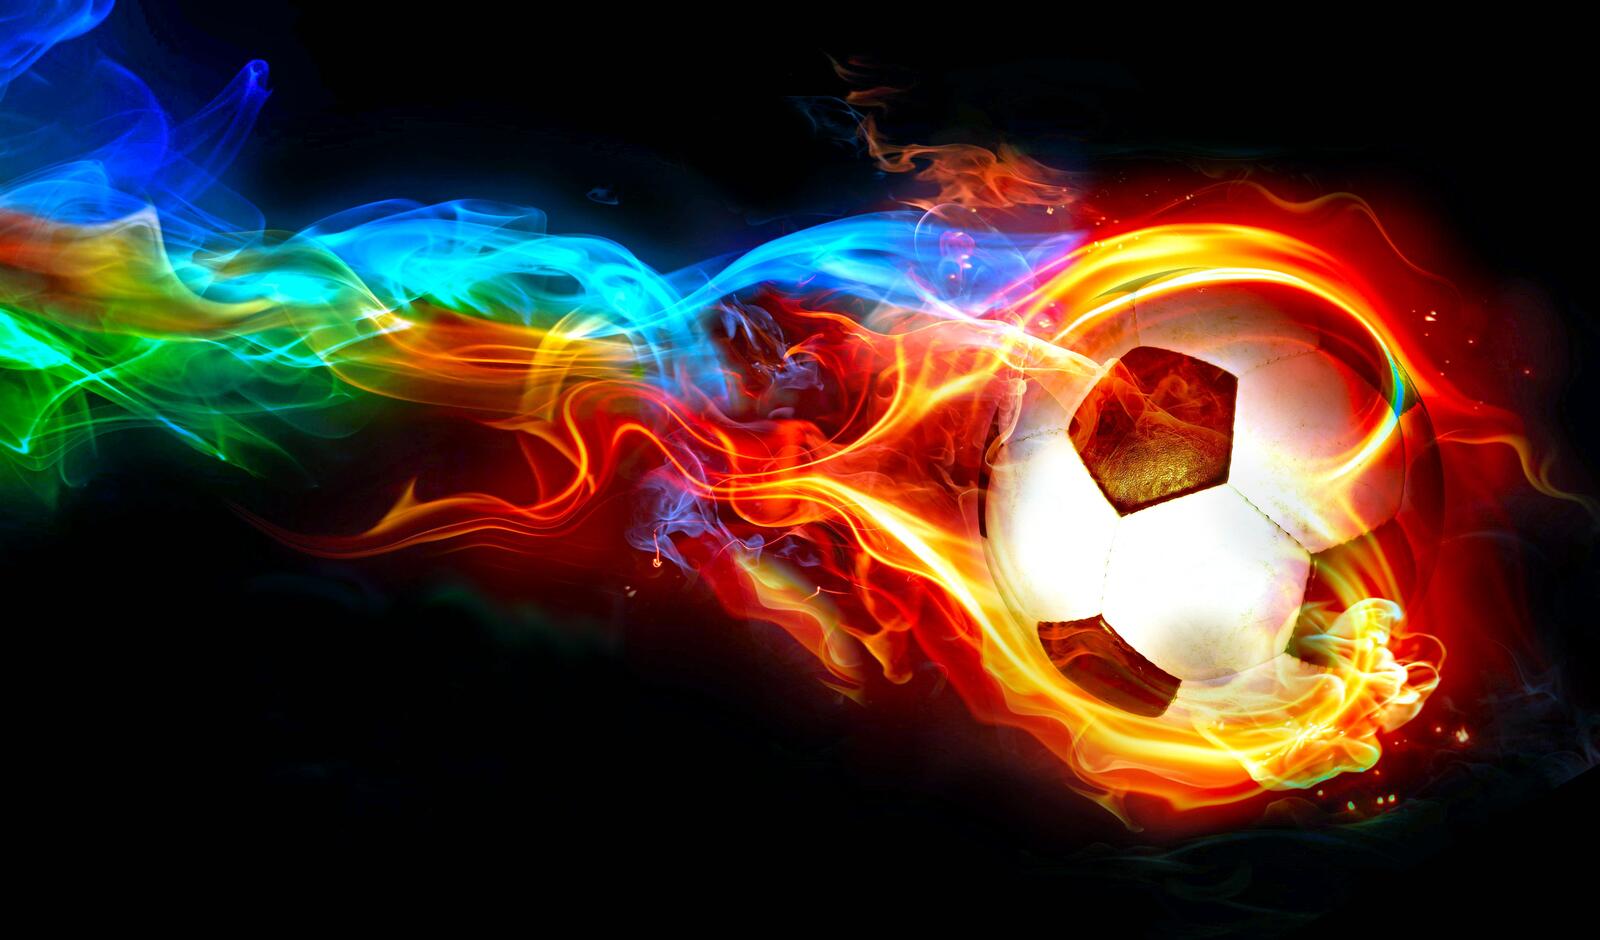 Бесплатное фото Футбольный мяч в огненной абстракции